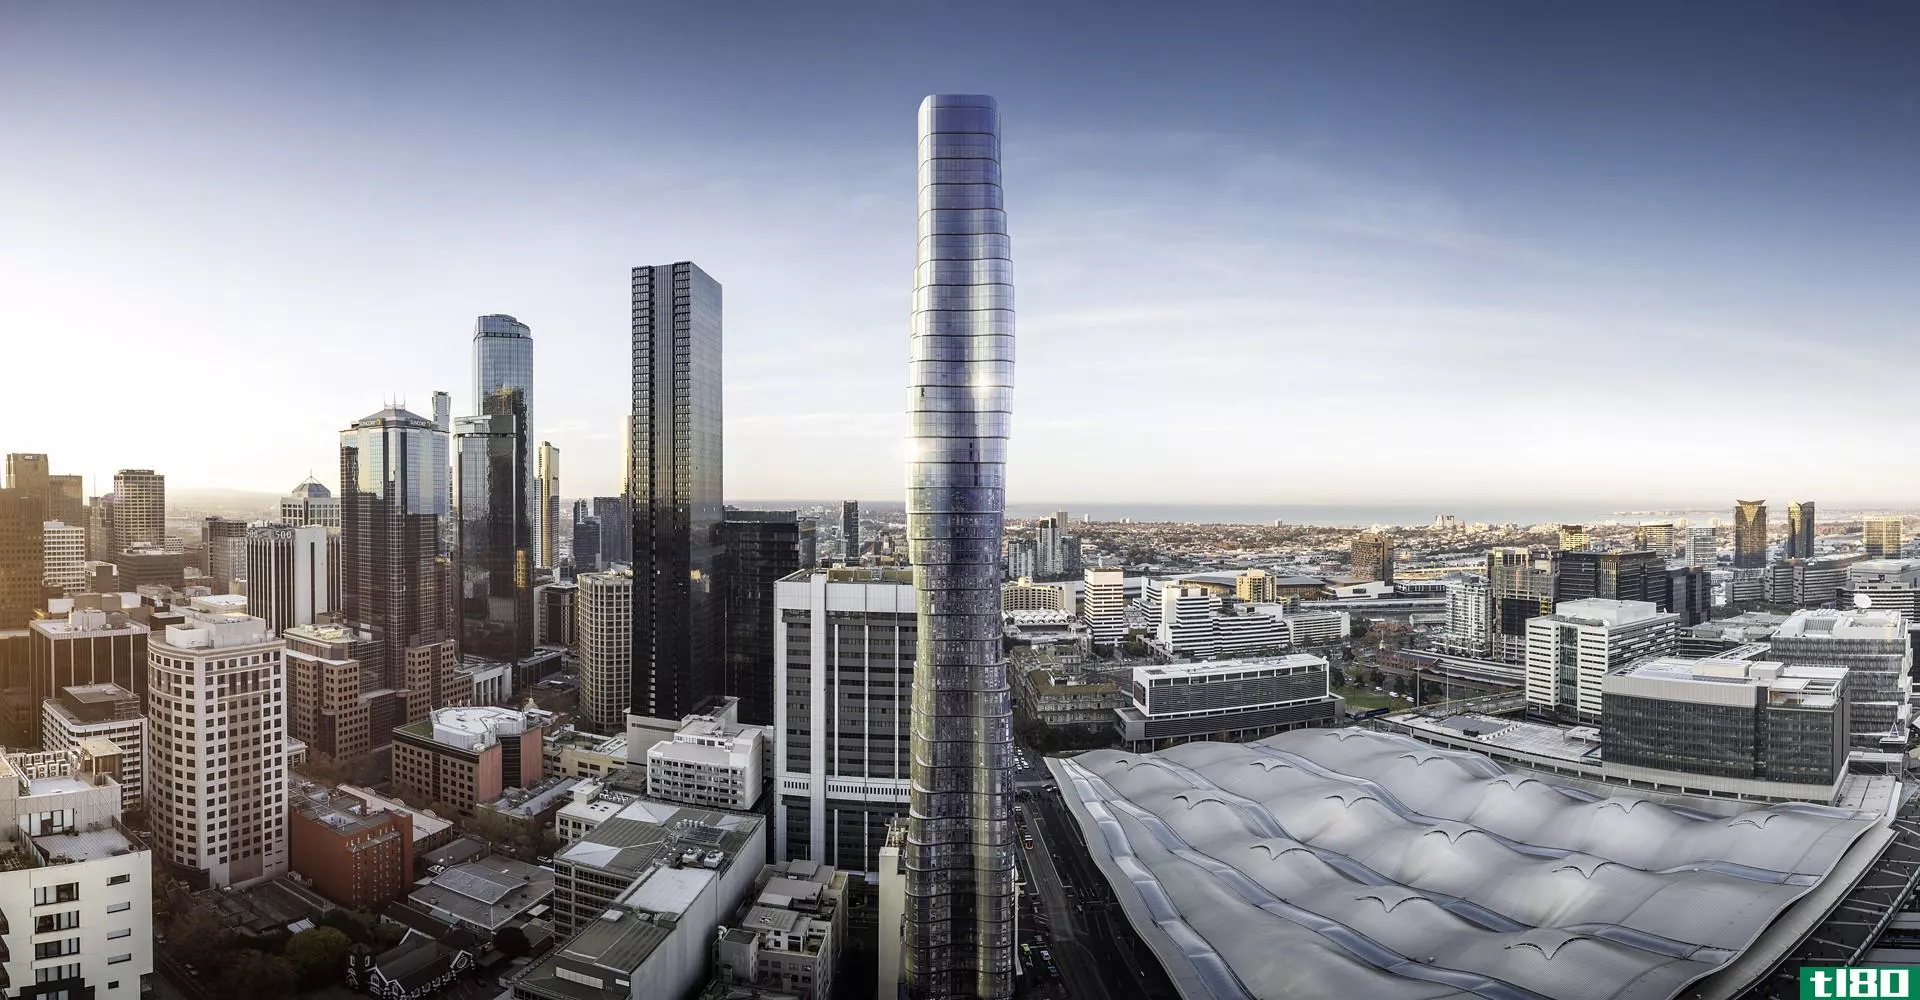 我们来谈谈碧昂丝é-澳大利亚正在建造的摩天大楼